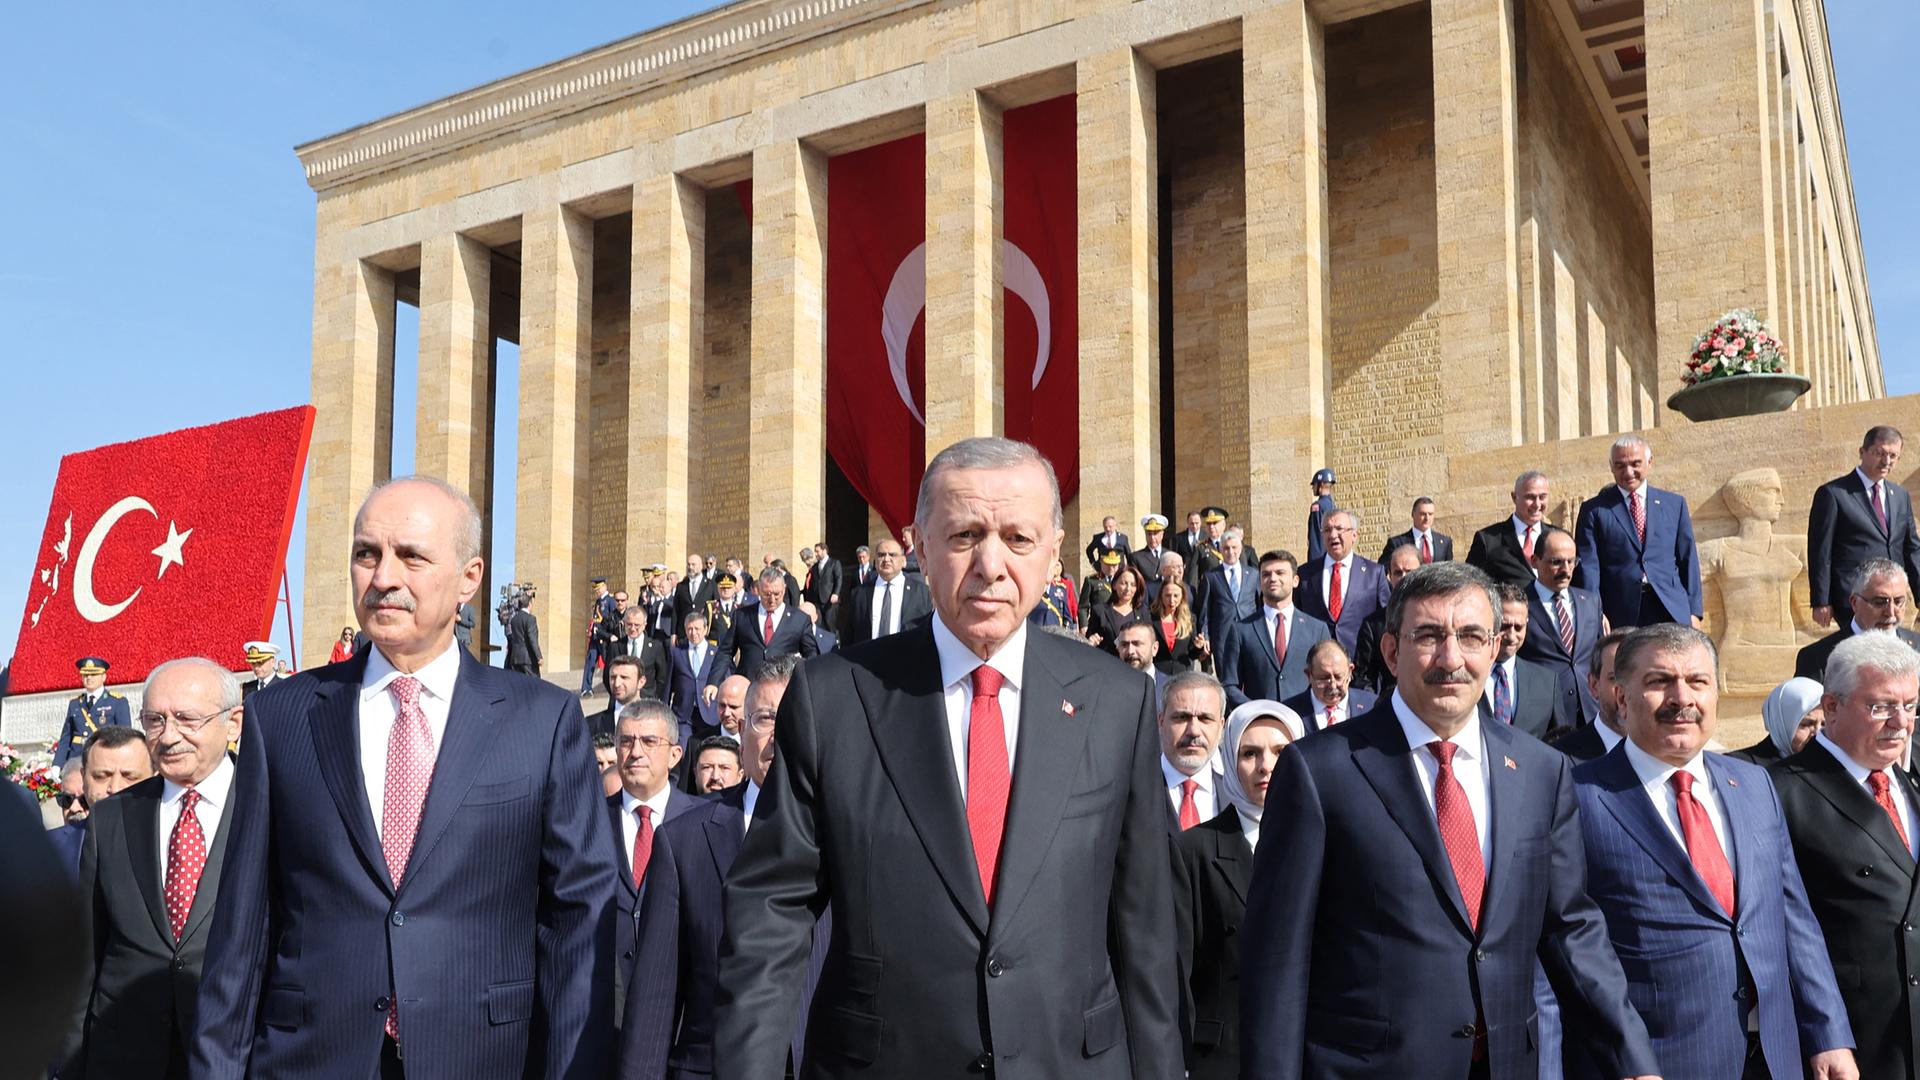 Erdogan steht zusammen mit weiteren Menschen vor dem Mausoleum von Kemal Atatürk, dem Gründer der Republik Türkei.